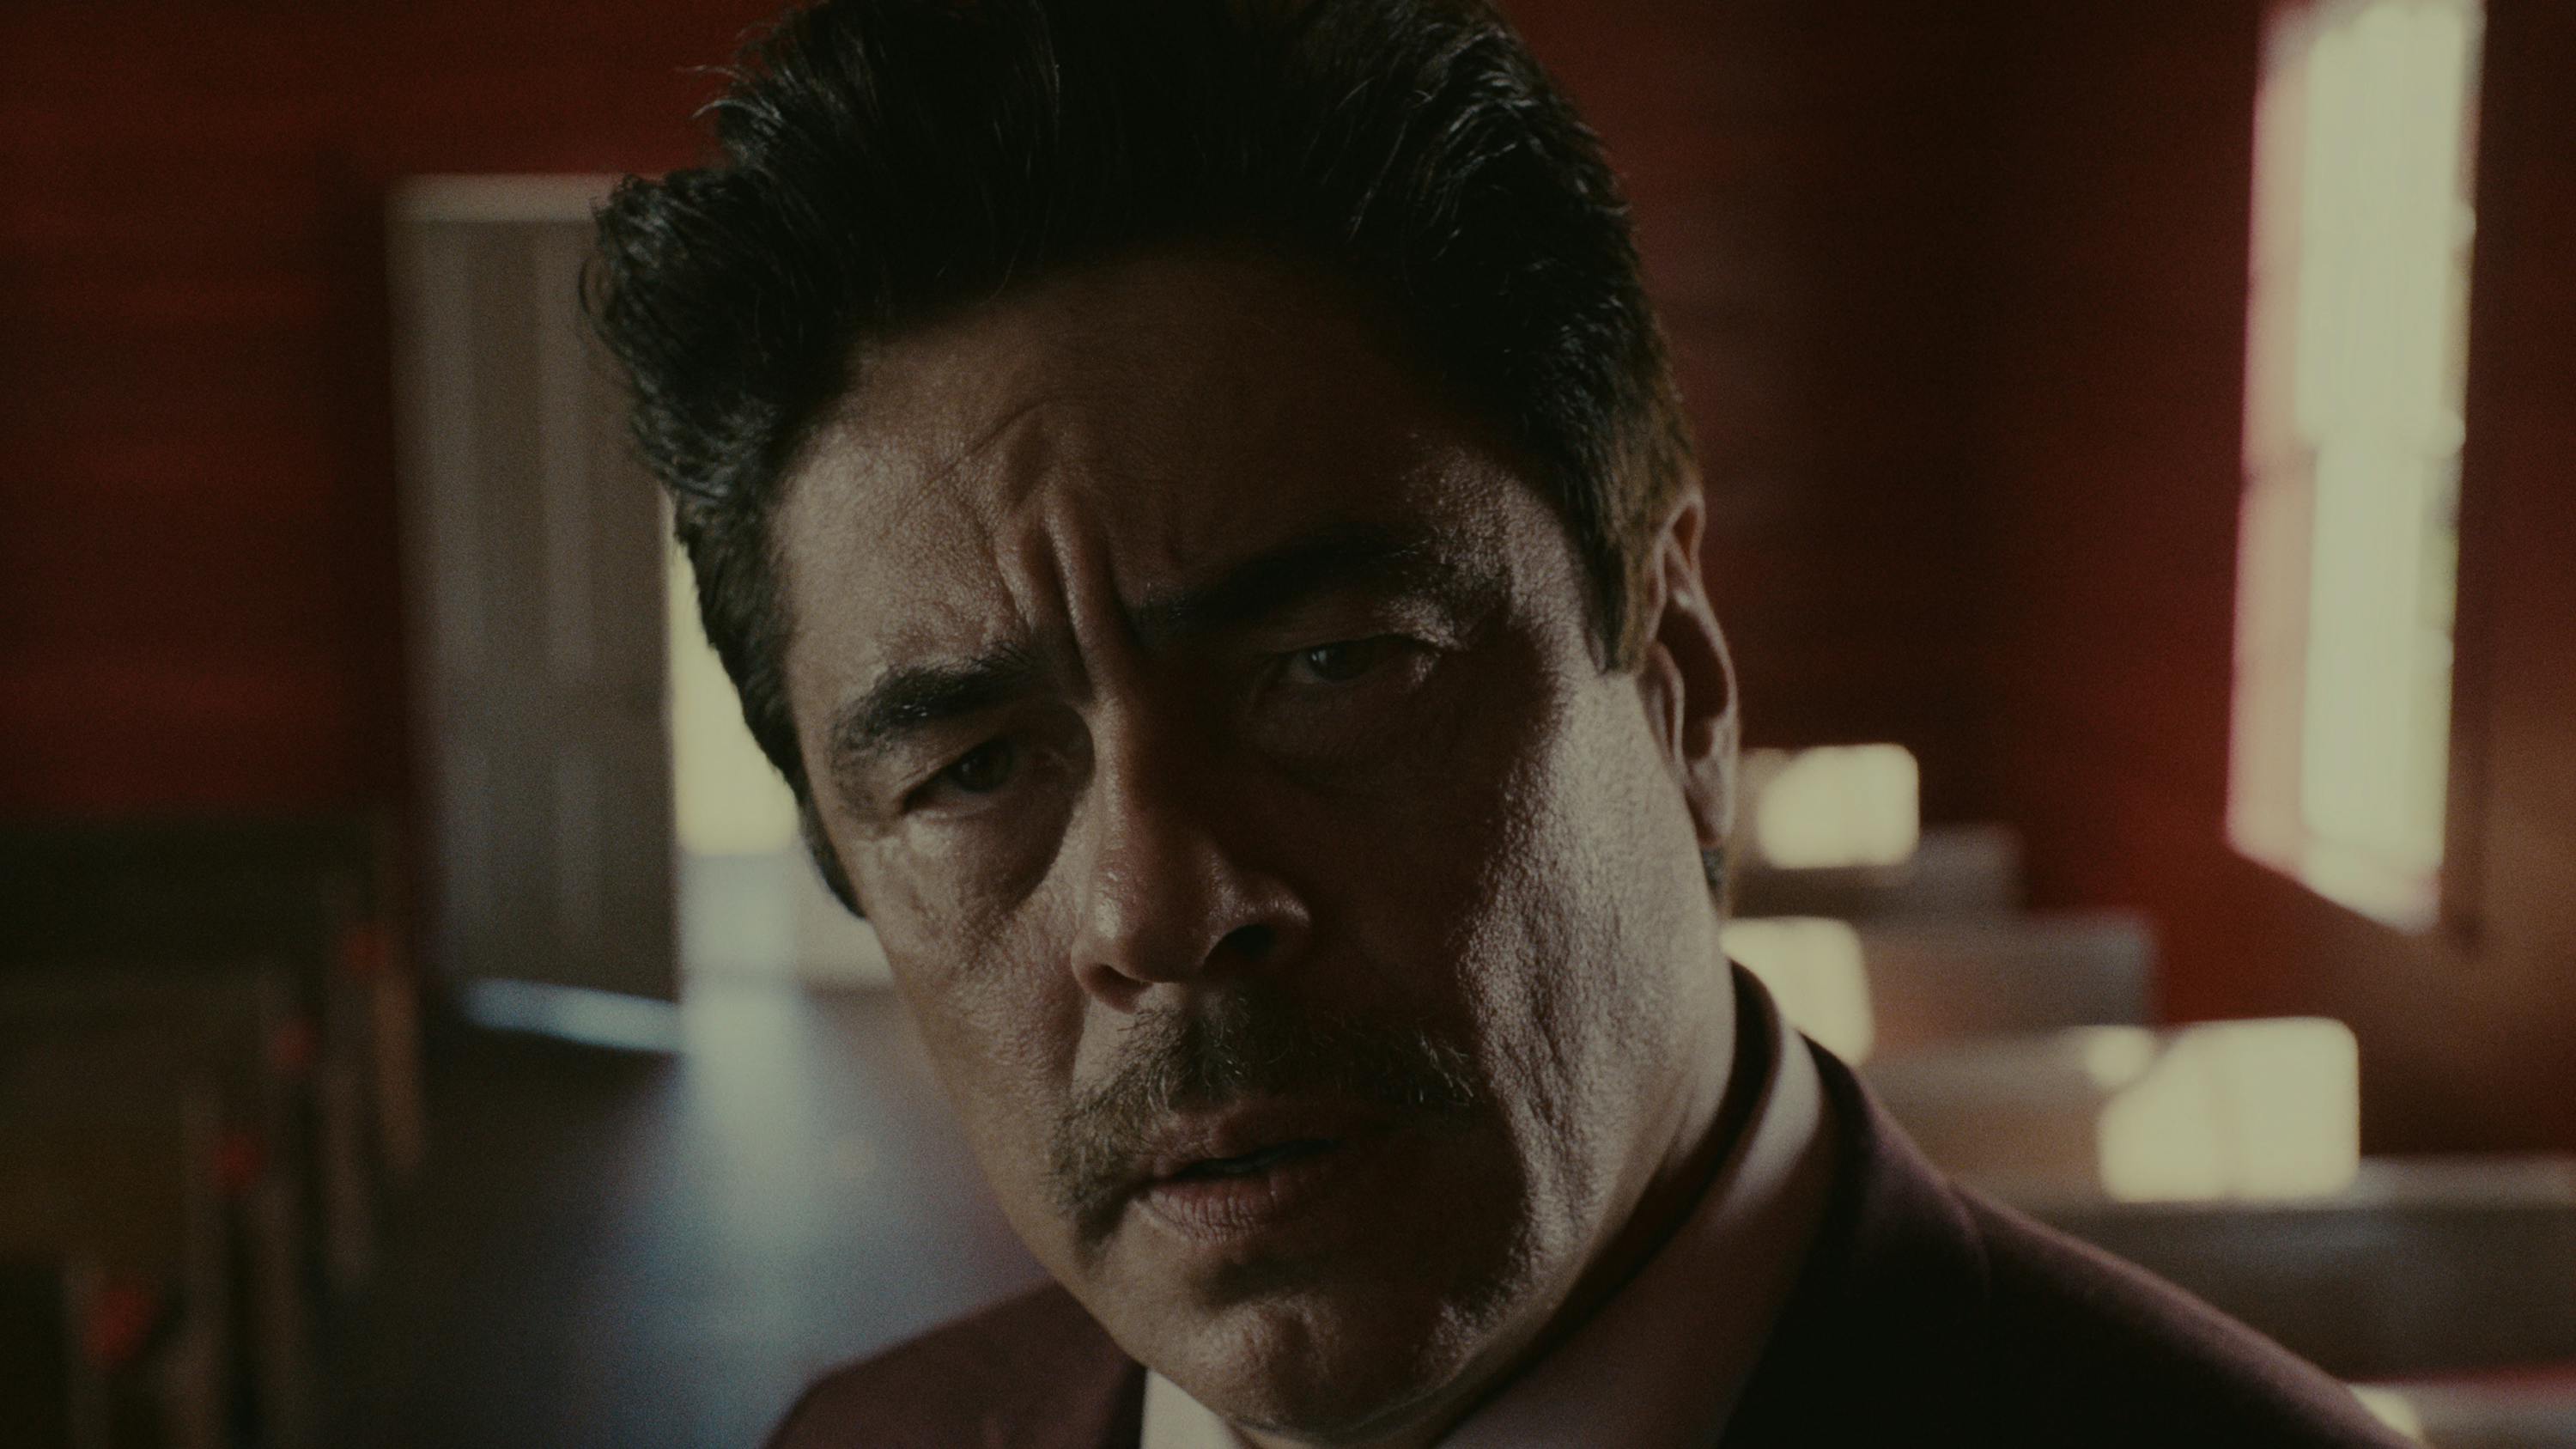 Tom Nichols (Benicio del Toro) looks perturbed in this close-up shot.